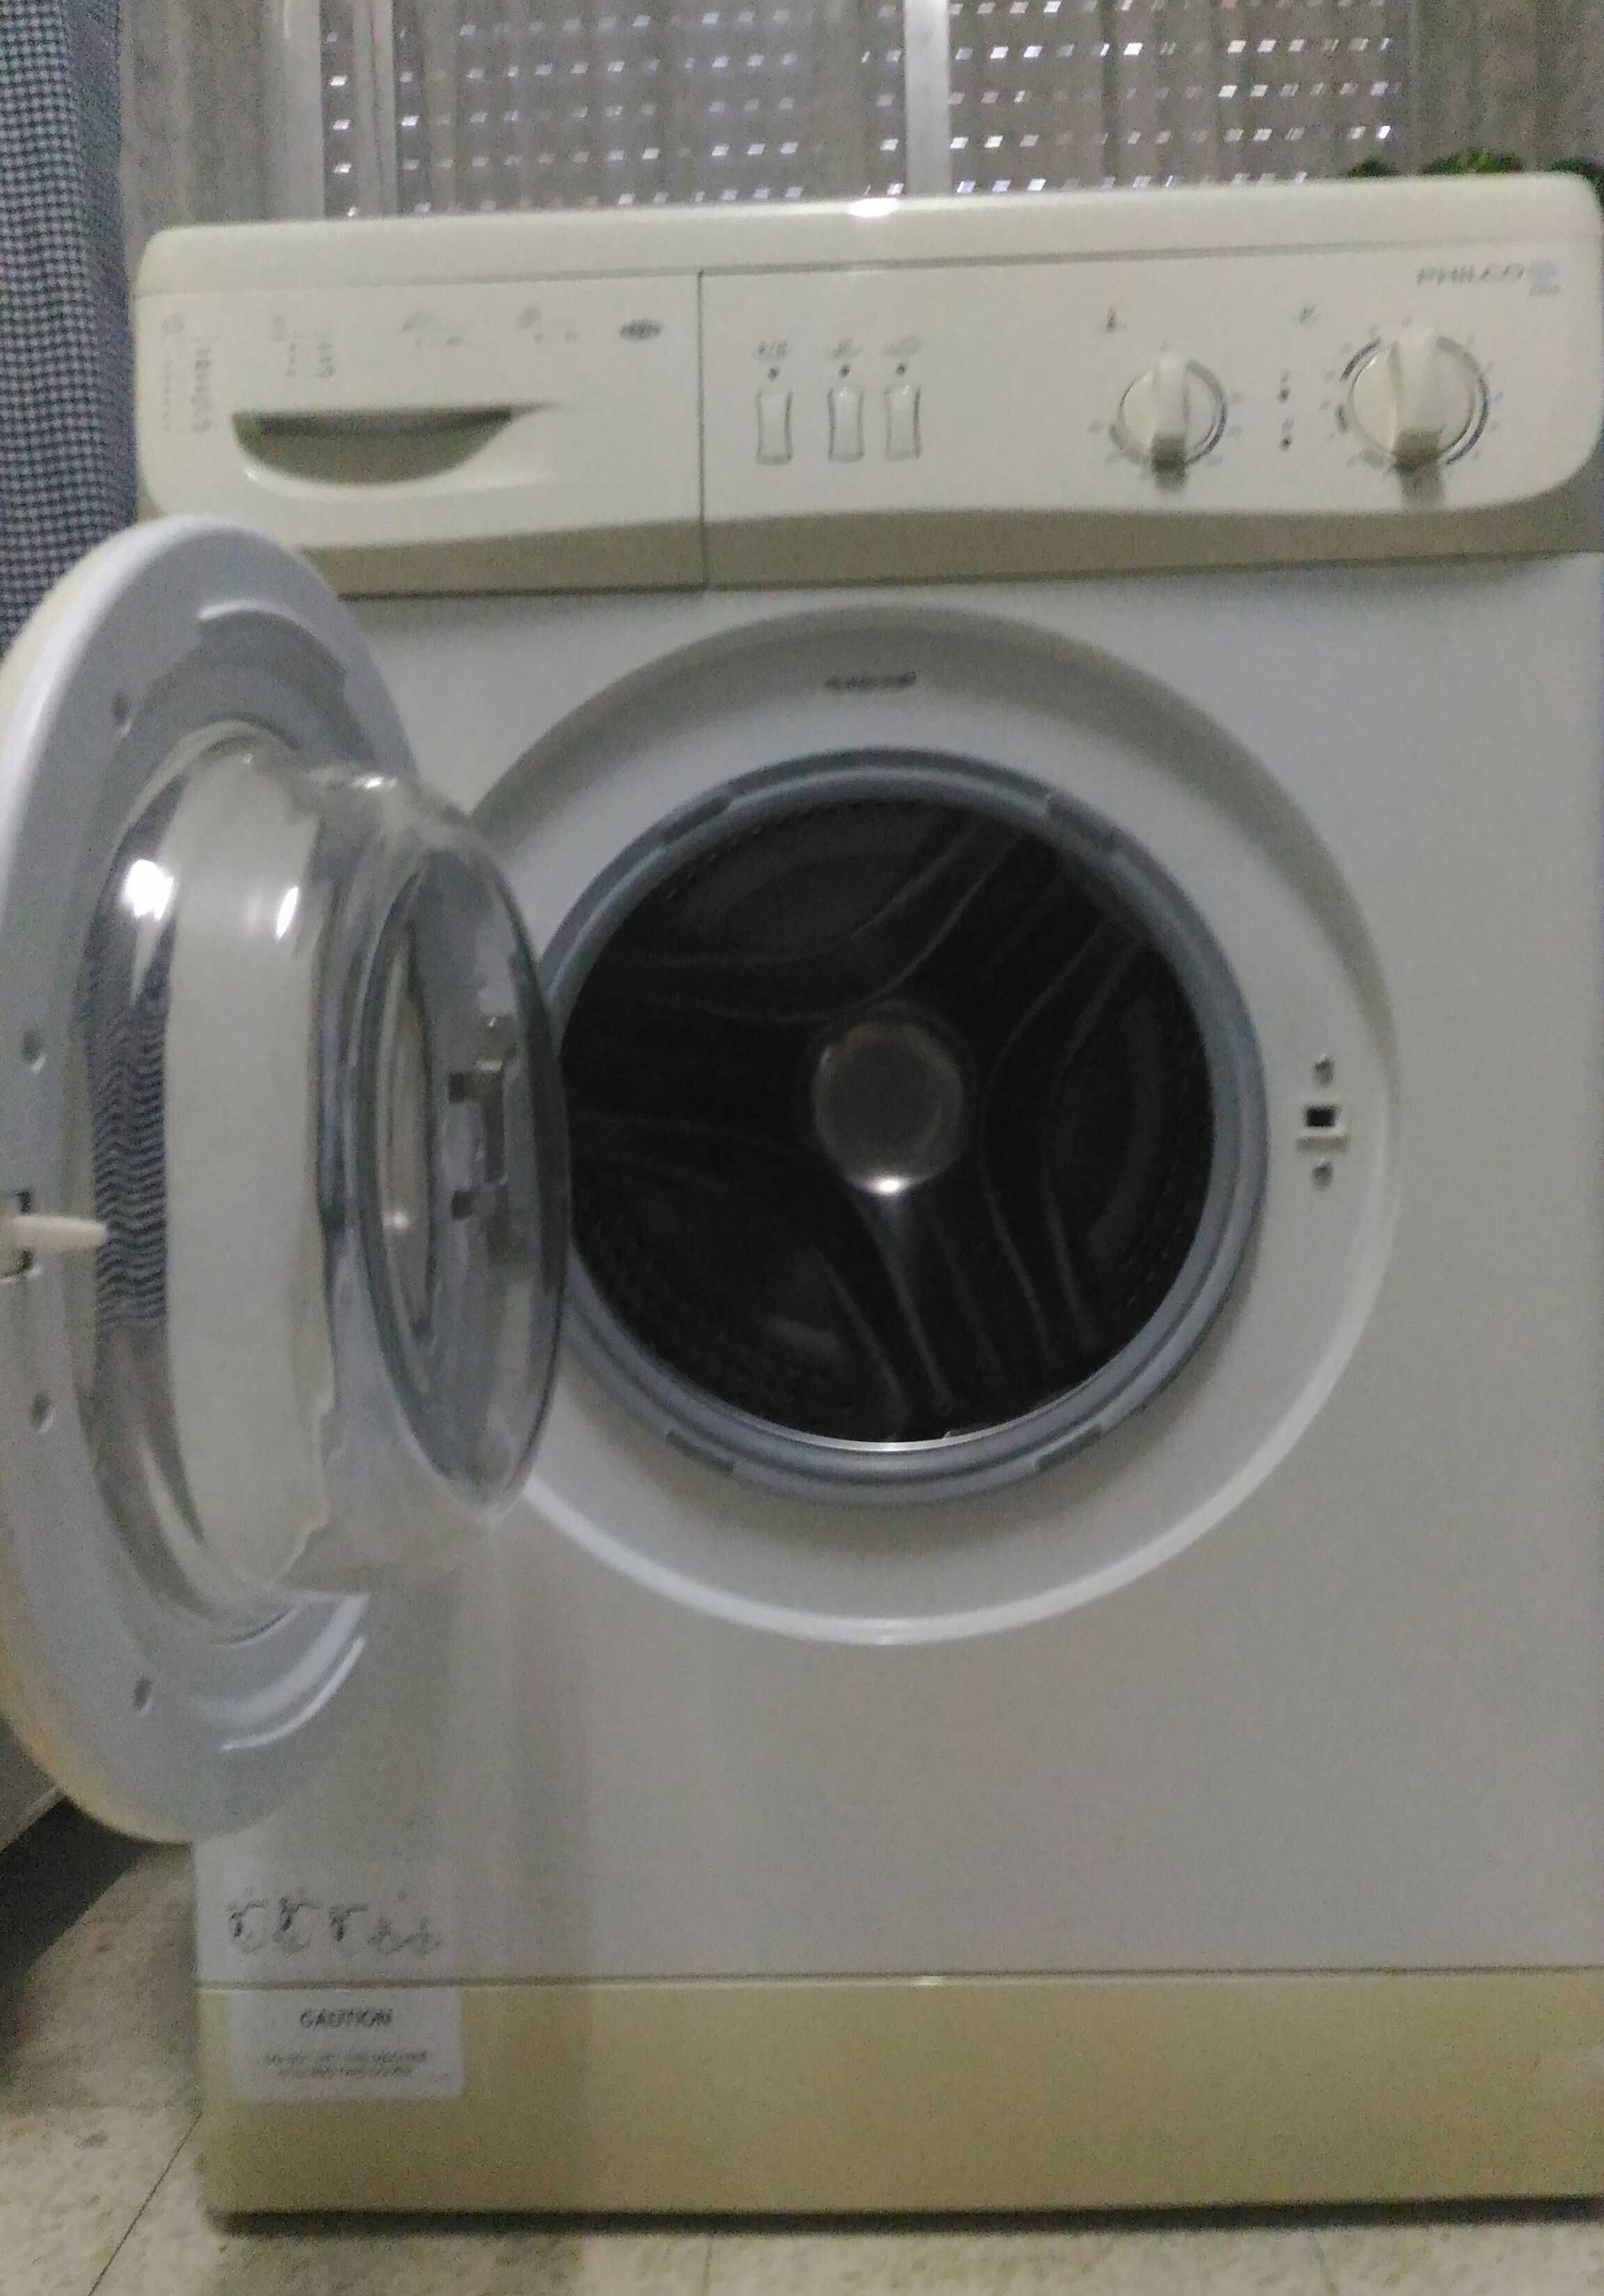 Maquina de lavar ropa Philco, estado impecavel, foi usada pouco tempo